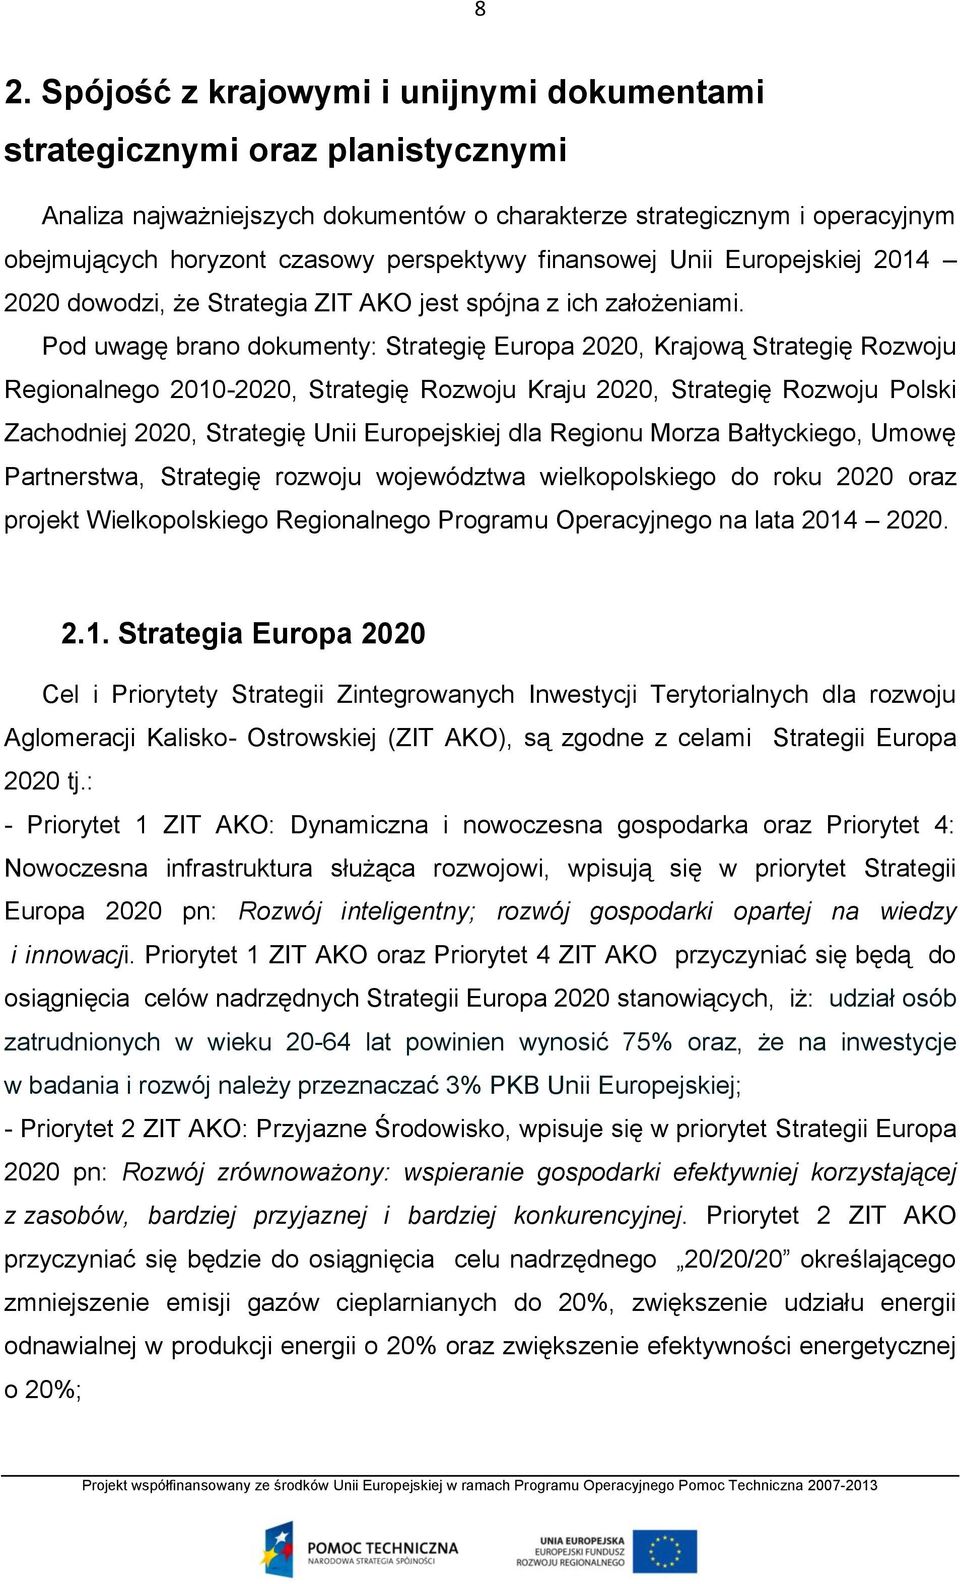 Pod uwagę brano dokumenty: Strategię Europa 2020, Krajową Strategię Rozwoju Regionalnego 2010-2020, Strategię Rozwoju Kraju 2020, Strategię Rozwoju Polski Zachodniej 2020, Strategię Unii Europejskiej